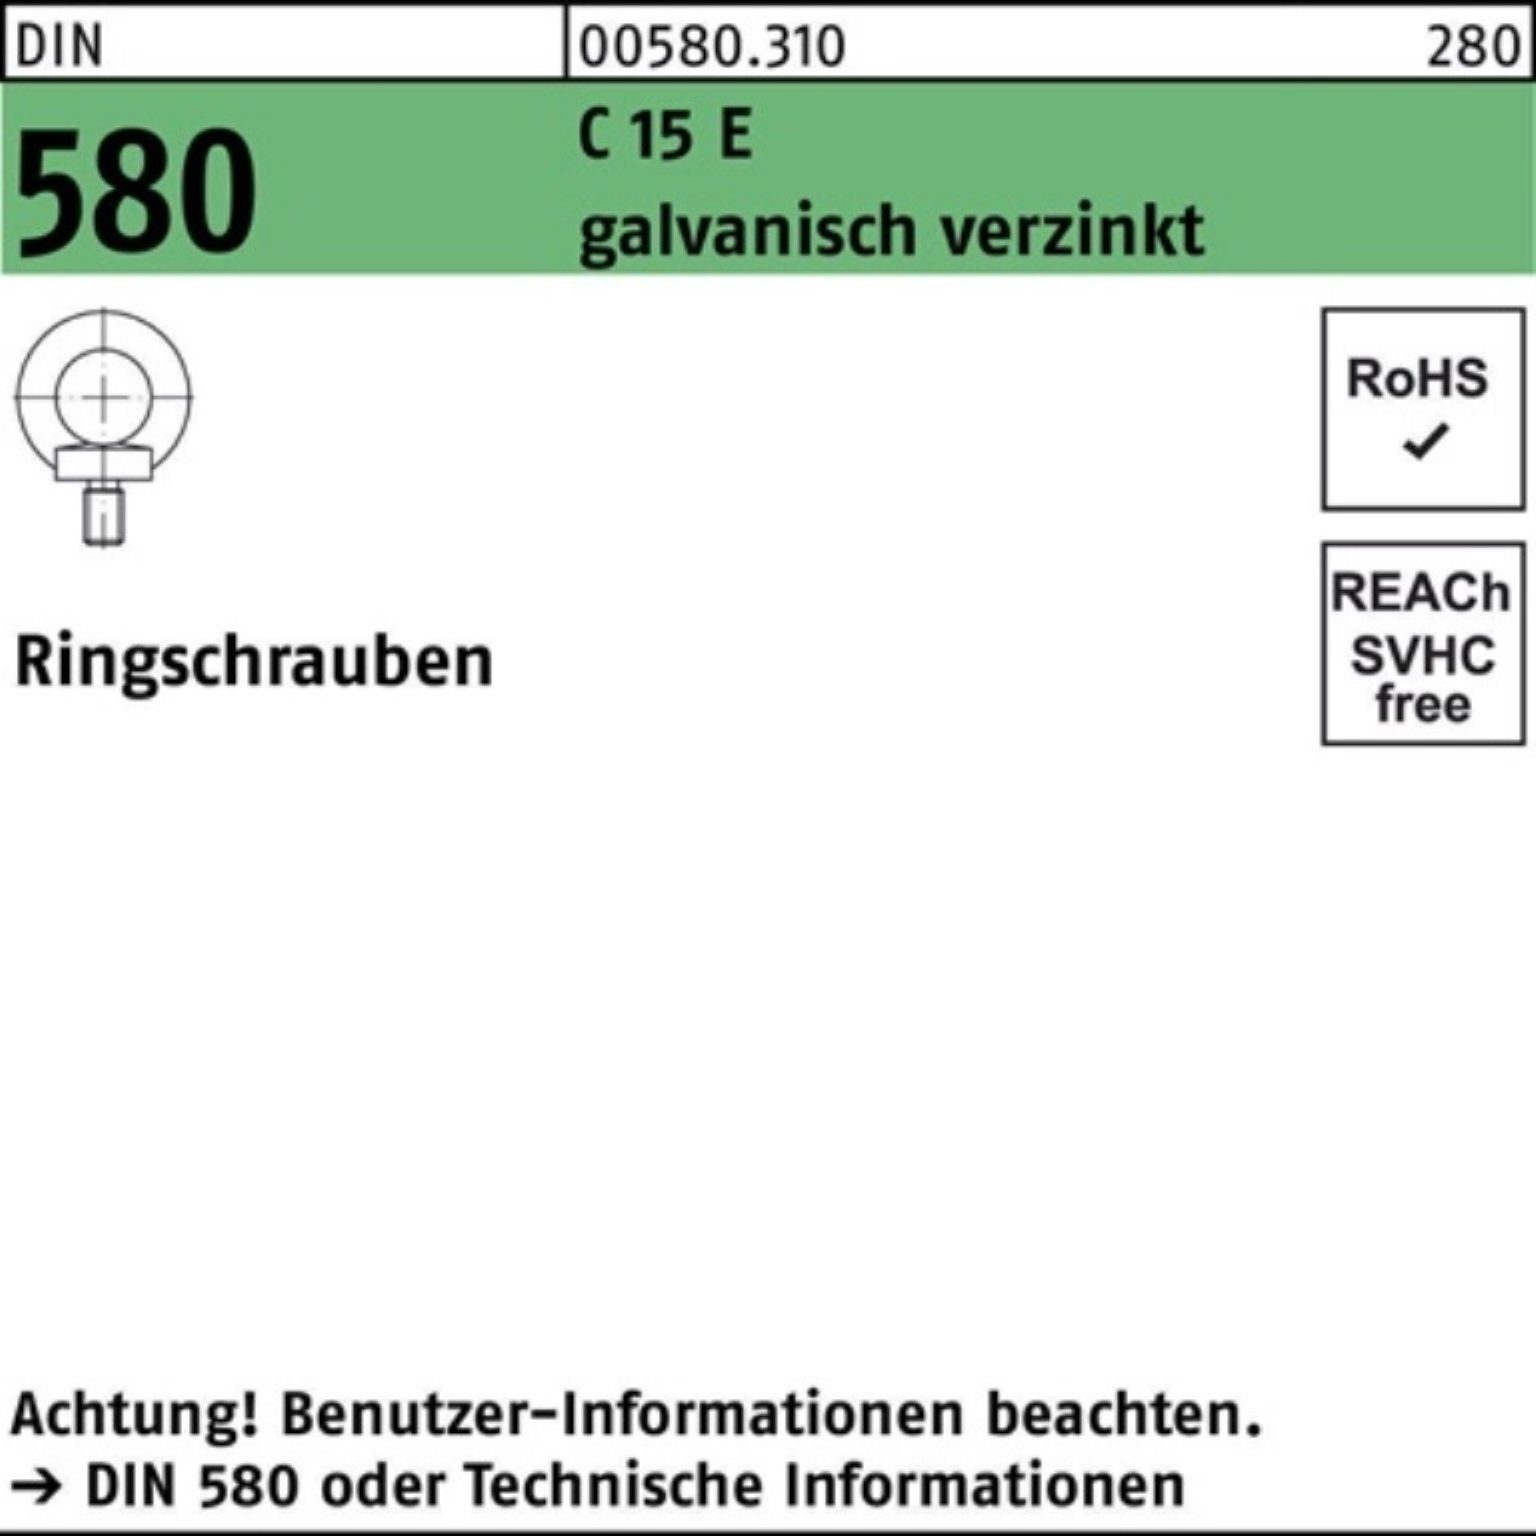 Reyher Schraube 100er Pack Ringschraube DIN 580 M14 C 15 E galv.verz. 10 Stück DIN 58